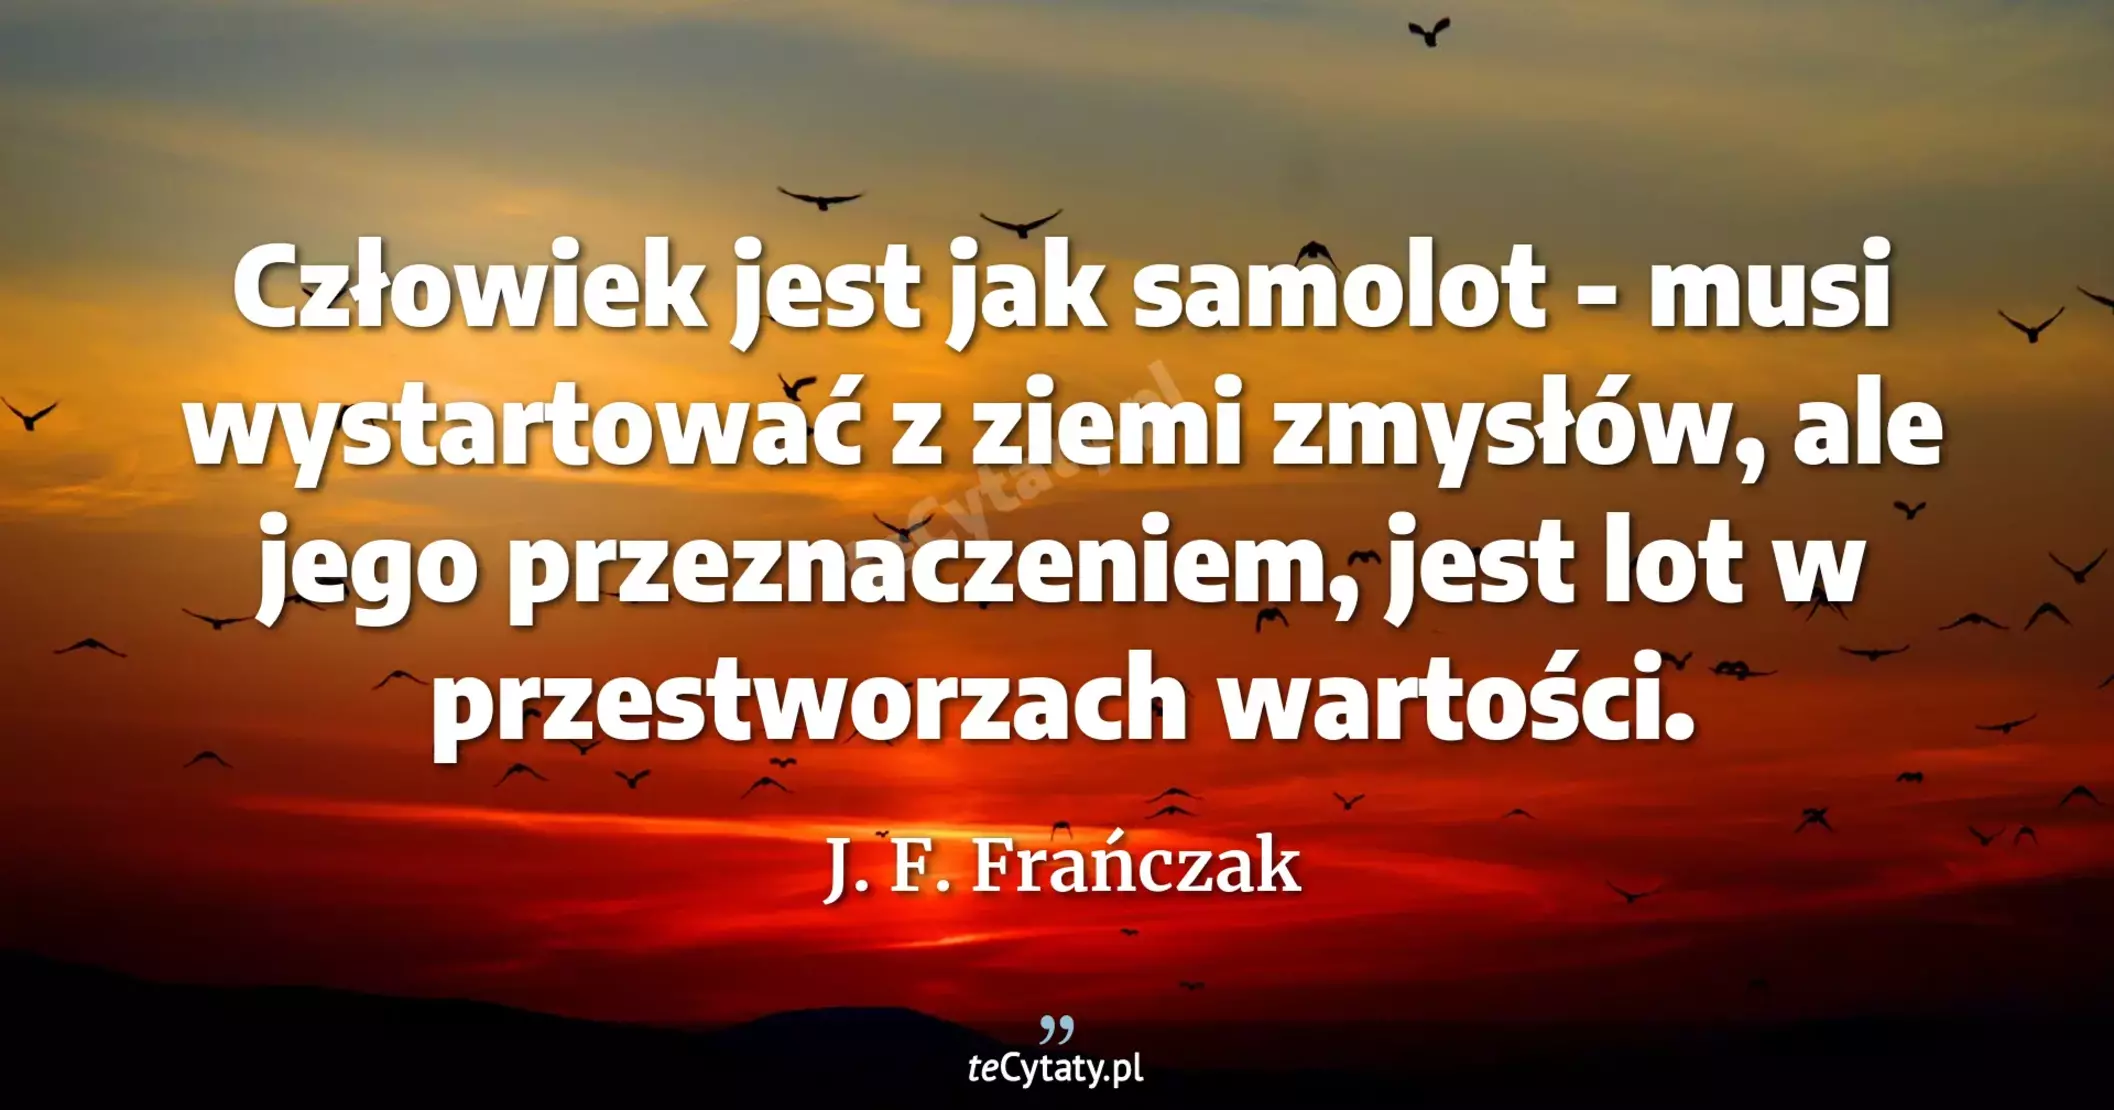 Człowiek jest jak samolot - musi wystartować z ziemi zmysłów, ale jego przeznaczeniem, jest lot w przestworzach wartości. - J. F. Frańczak